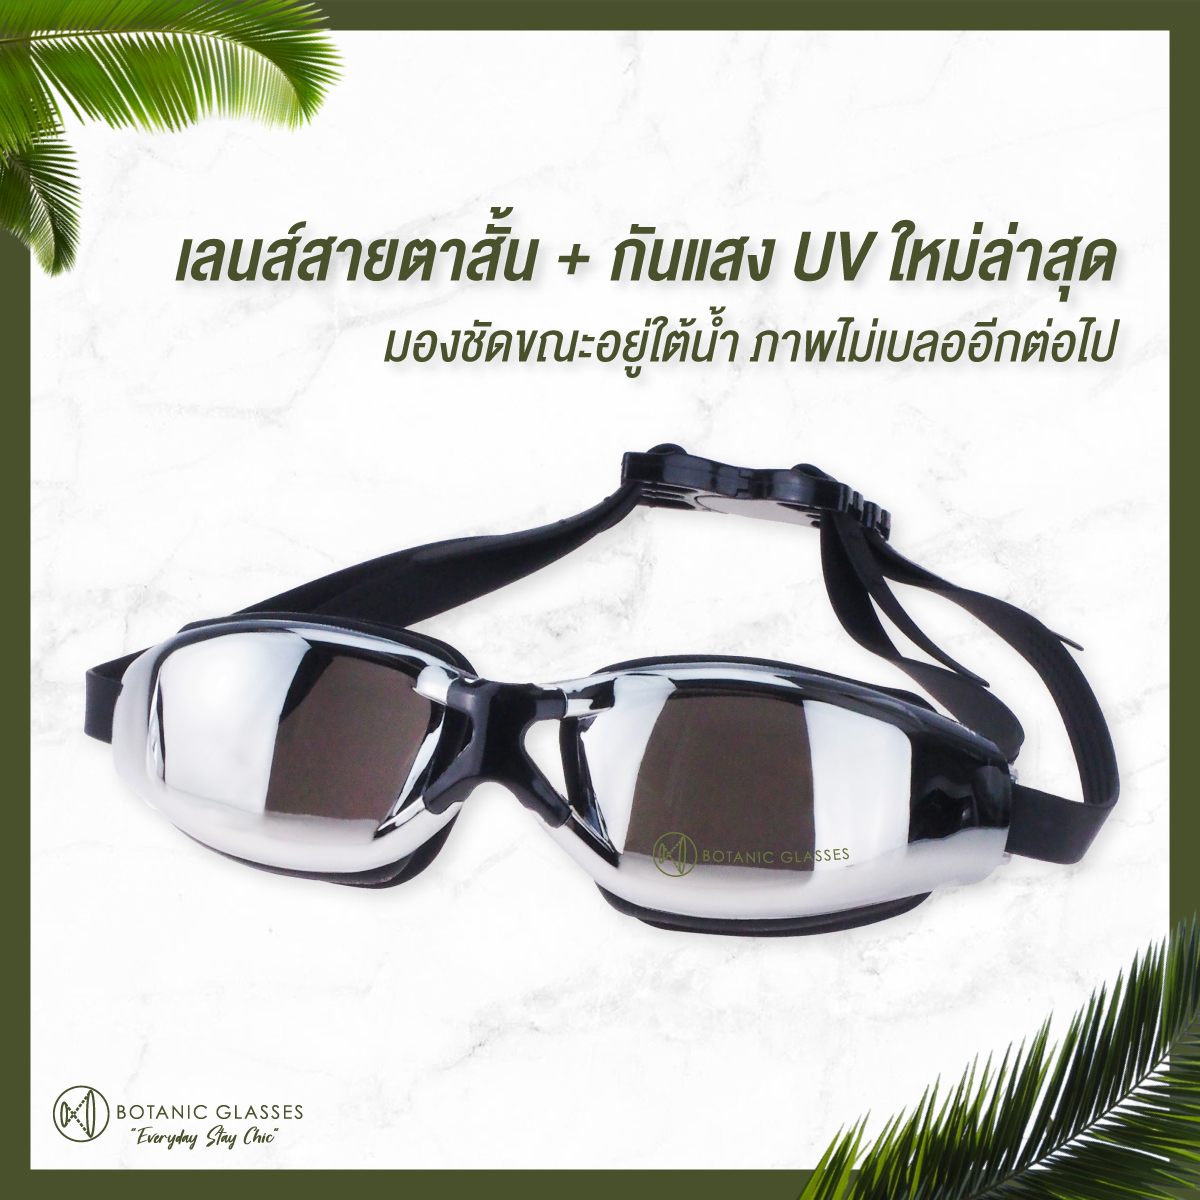 ข้อมูลเกี่ยวกับ แว่นกันน้ำ สายตาสั้น 150 ถึง 800 แว่นว่ายน้ำ ของแท้ Botanic Glasses กัน UV 99% แว่นตาว่ายน้ำ Free กล่องแว่น